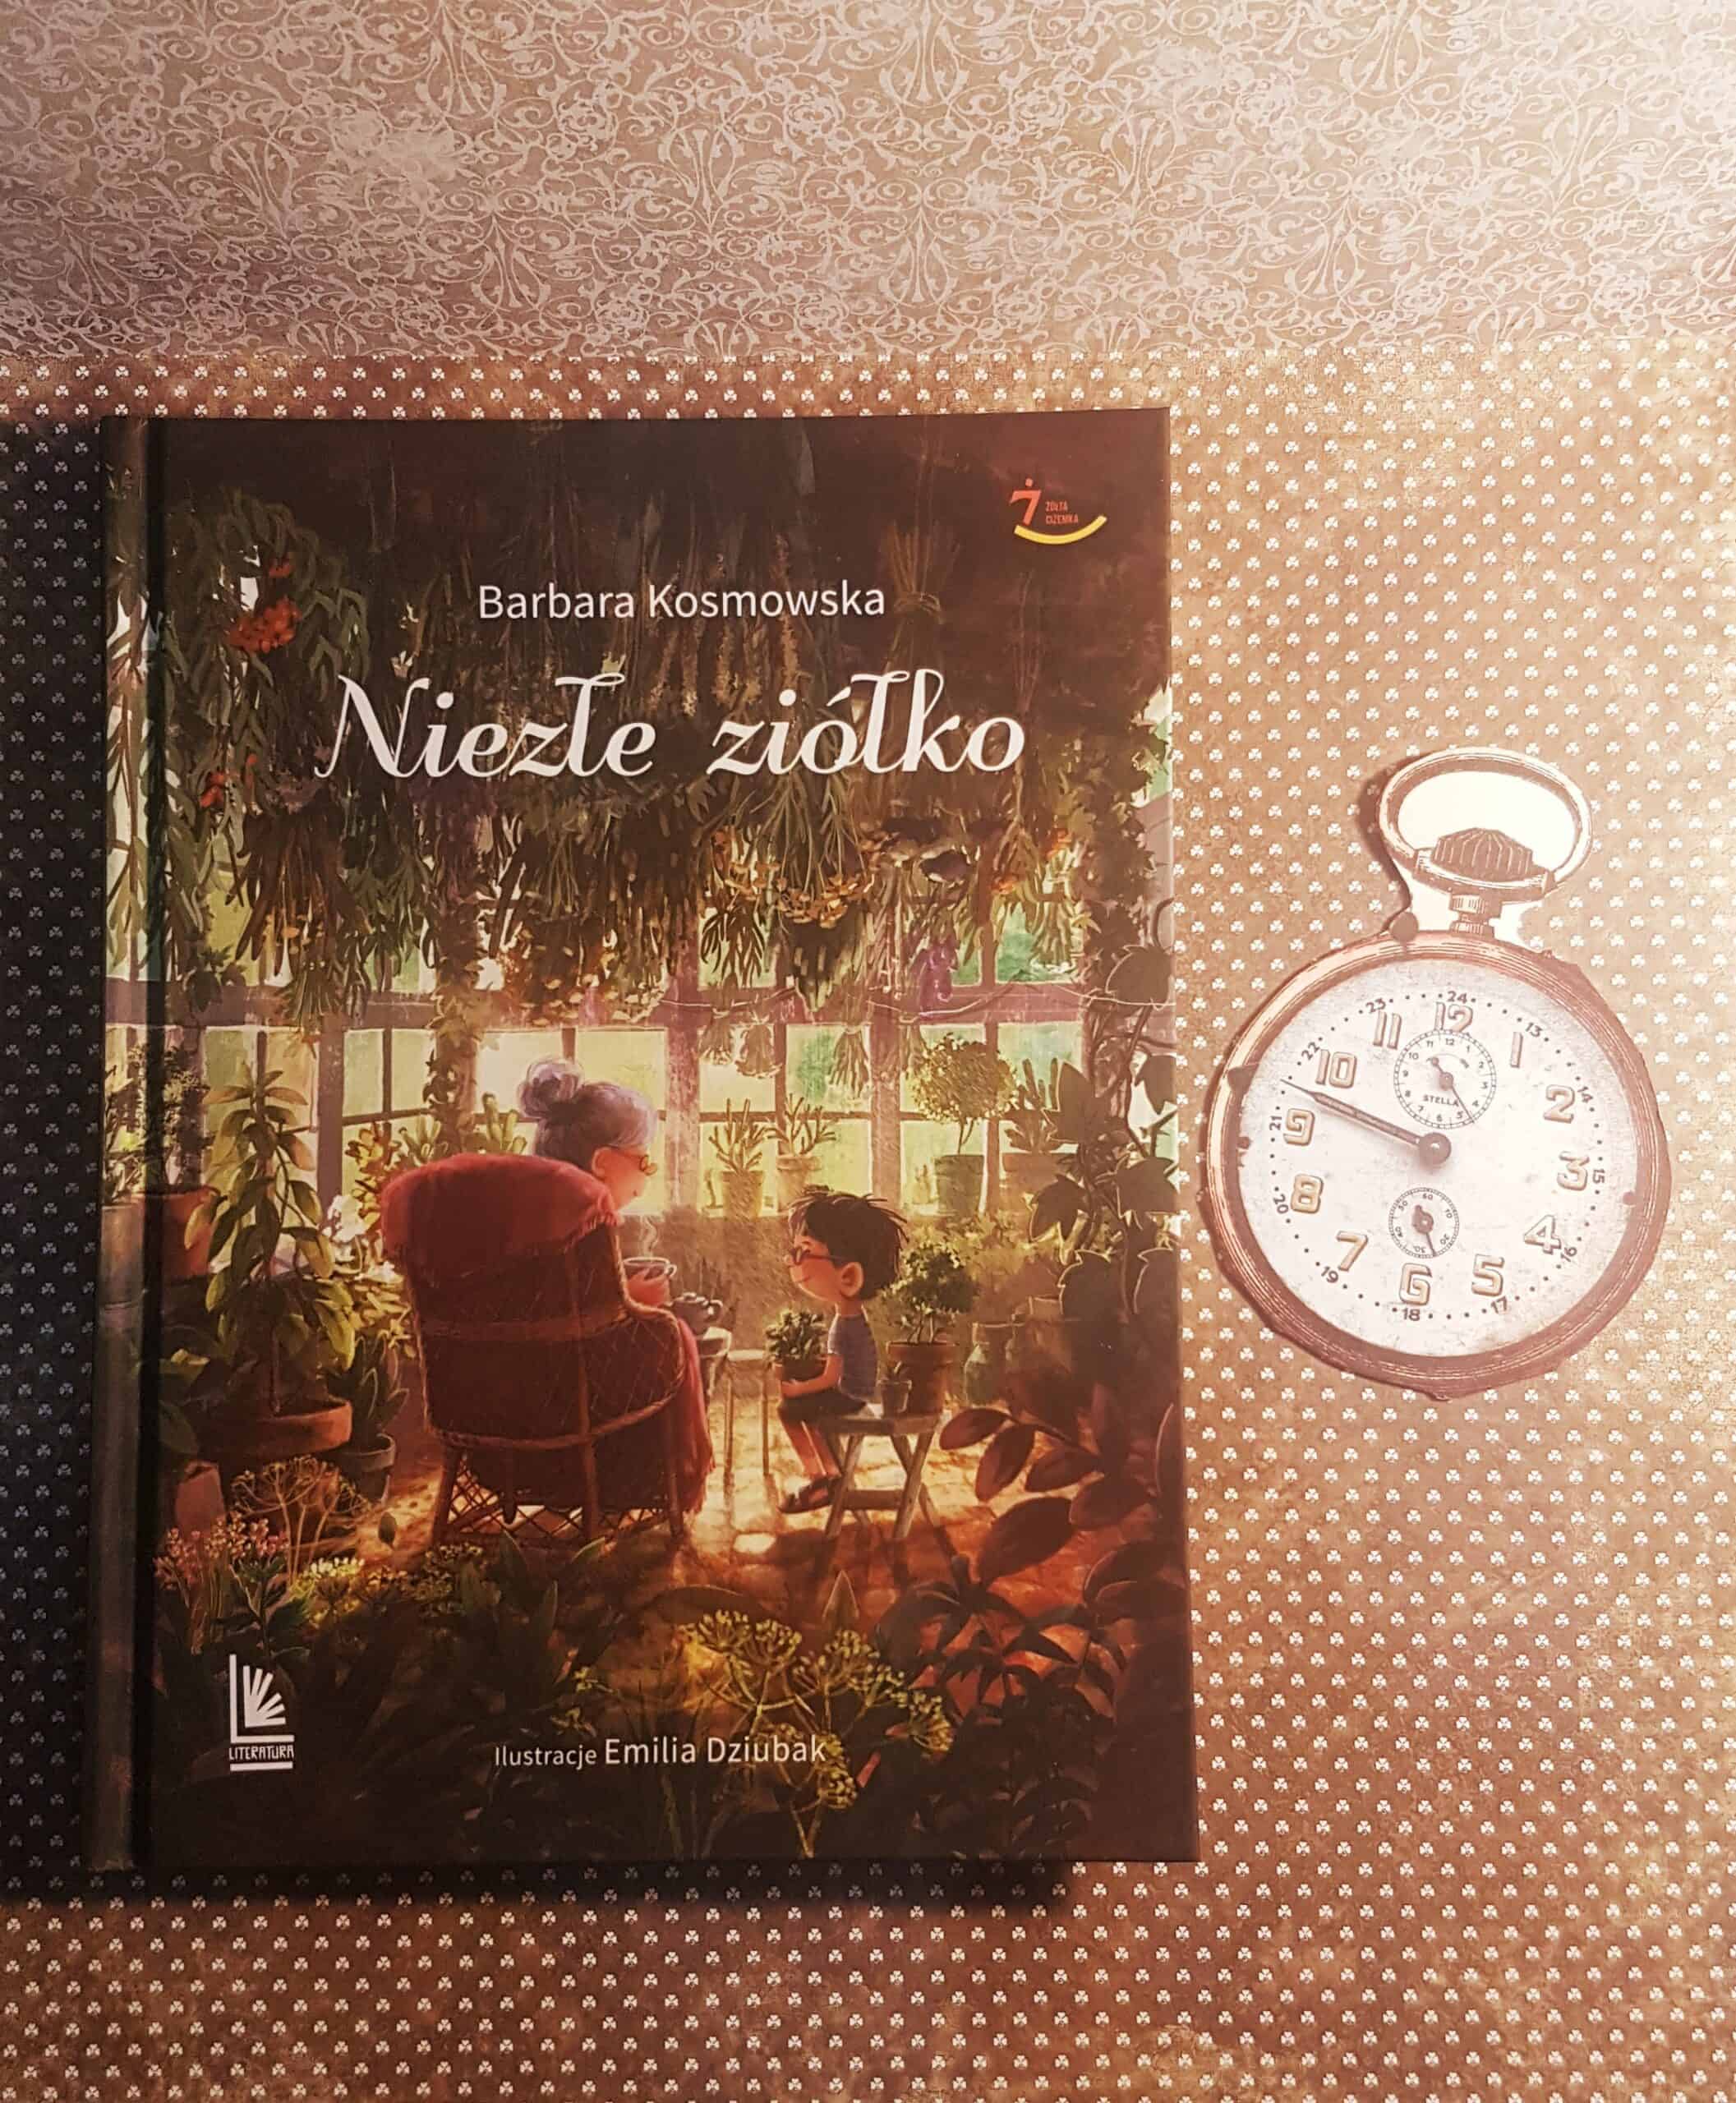 książka Niezłe ziółko Barbary Kosmowskiej, z ilustracjami Emilii Dziubak, jako dodatek jest zegar